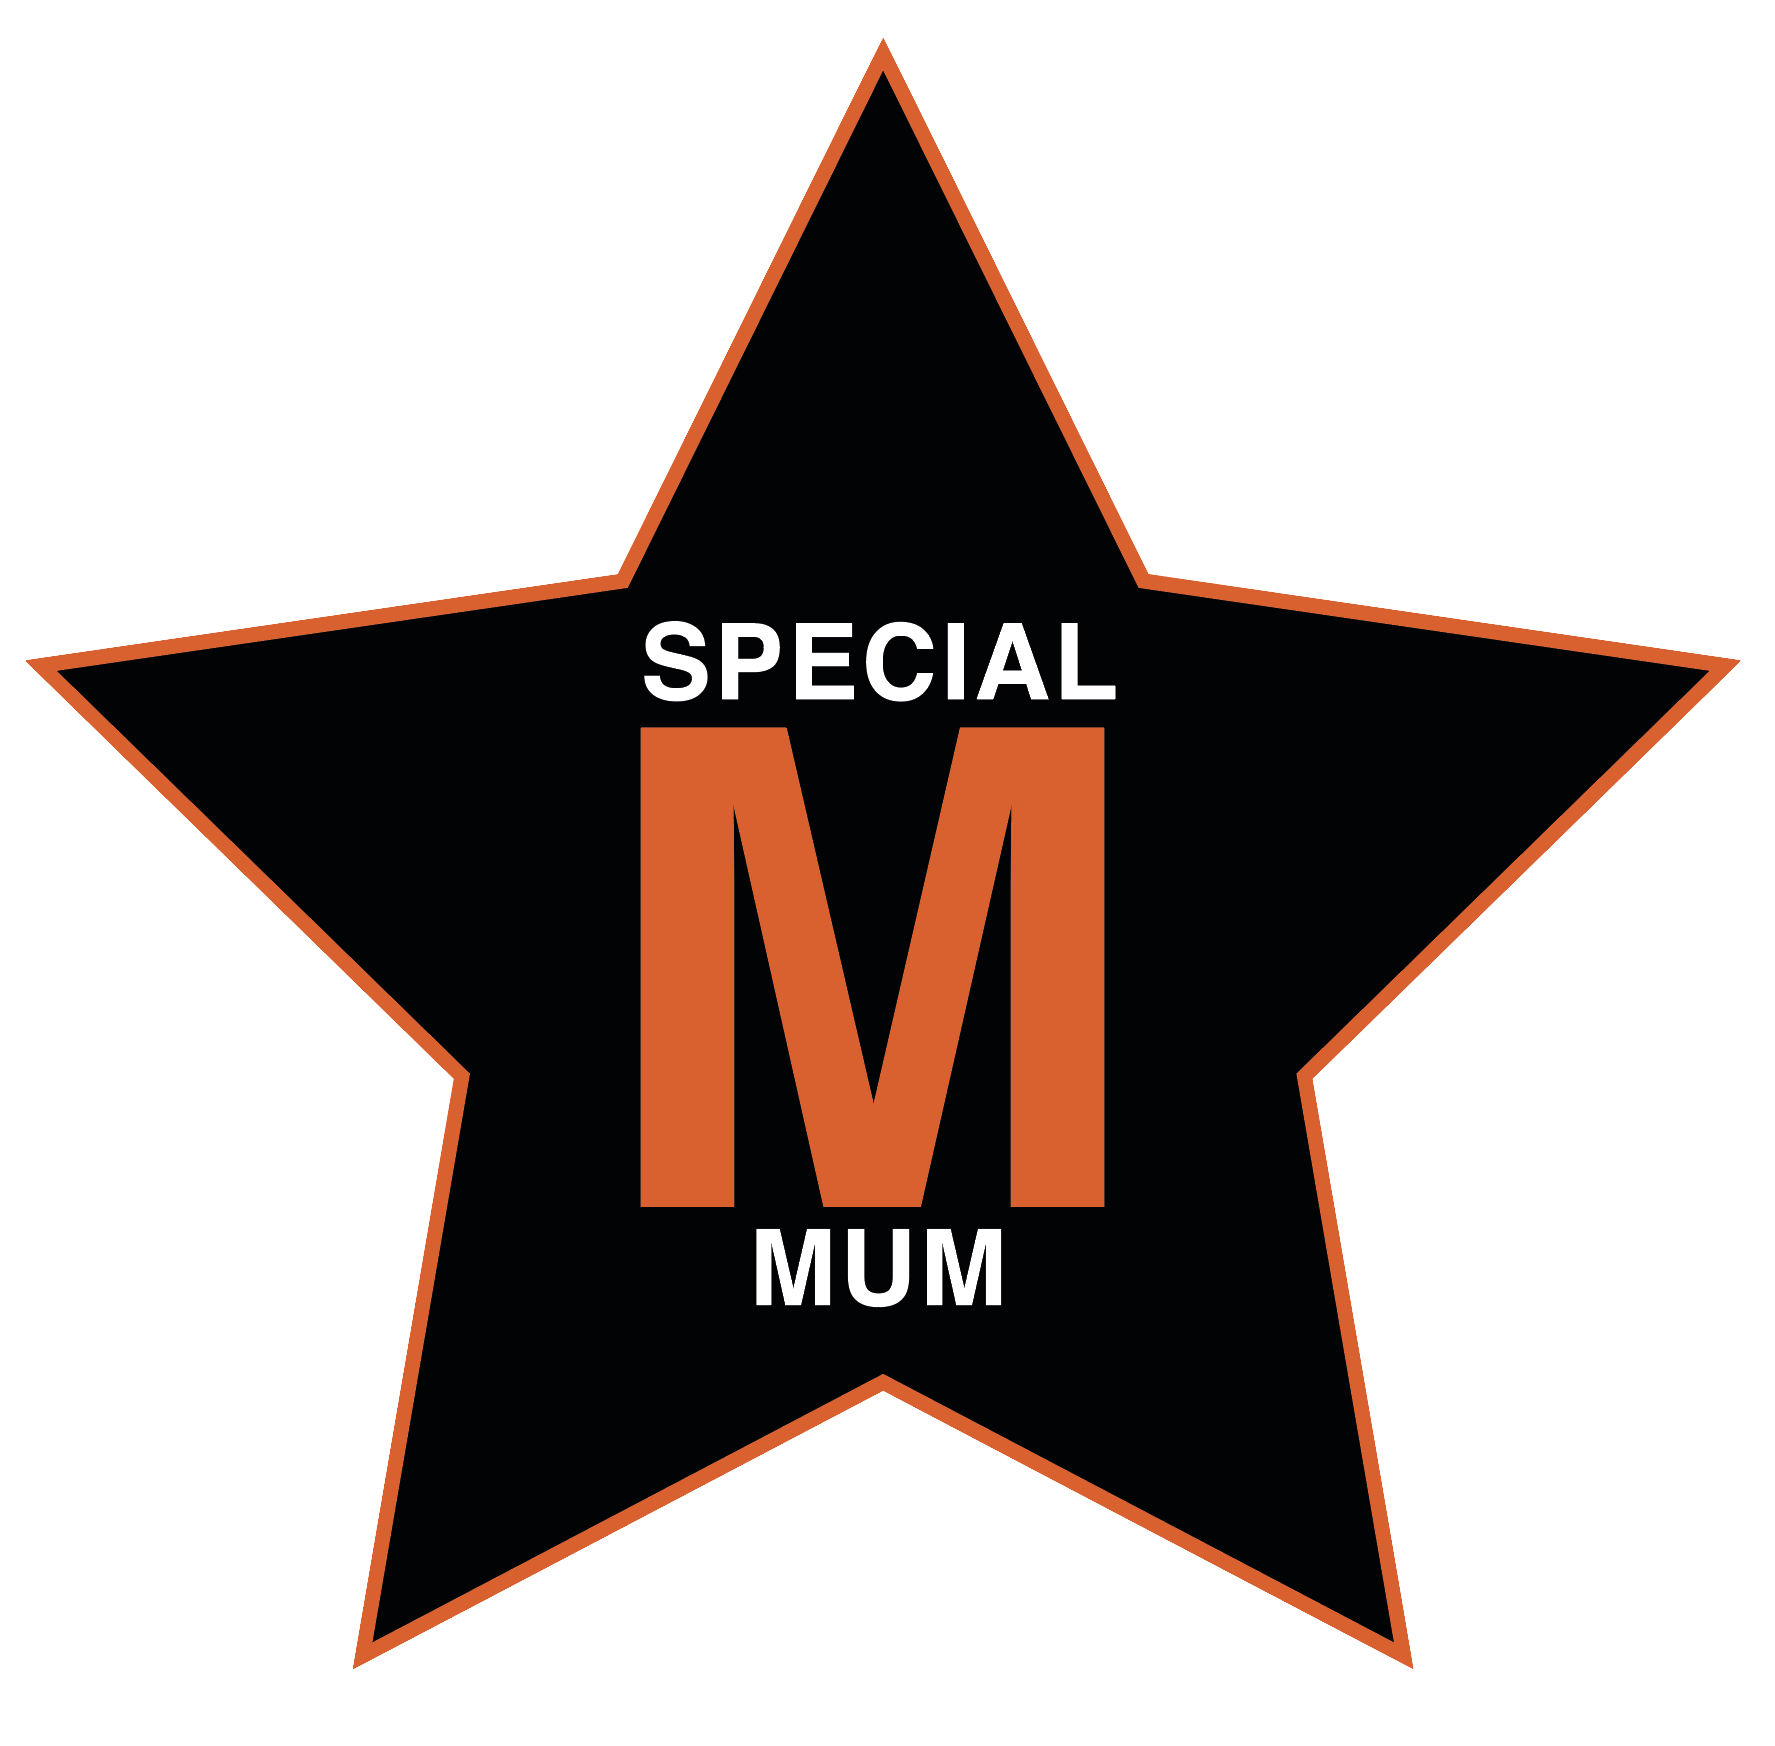 Logo Special Mum - I 3 super poteri per diventare una super mamma